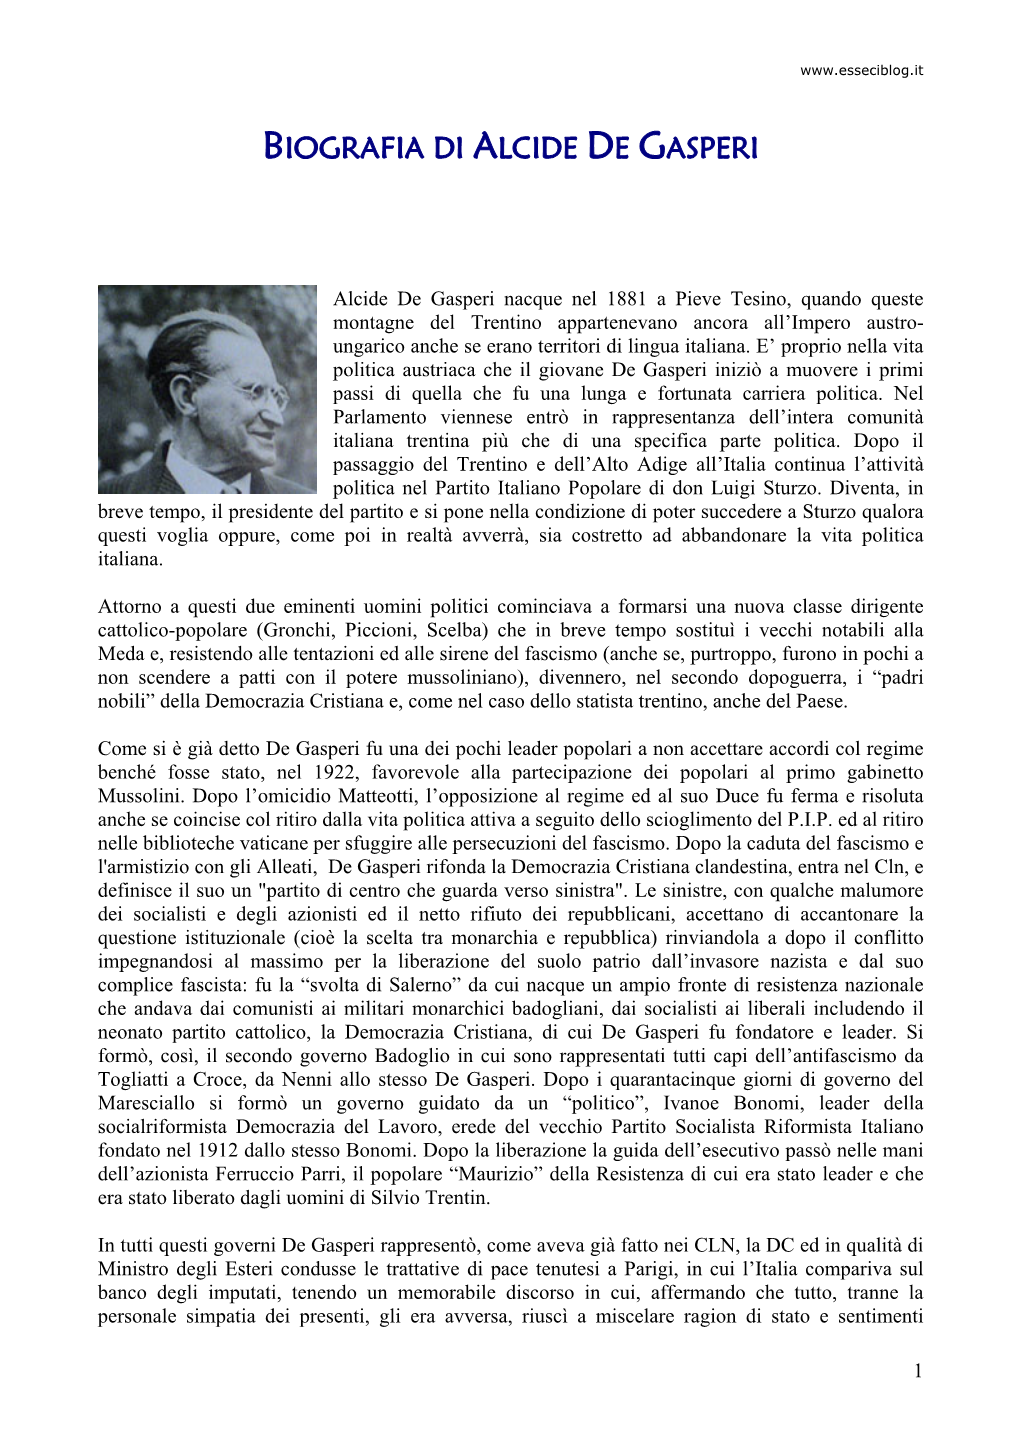 Biografia Di Alcide De Gasperi